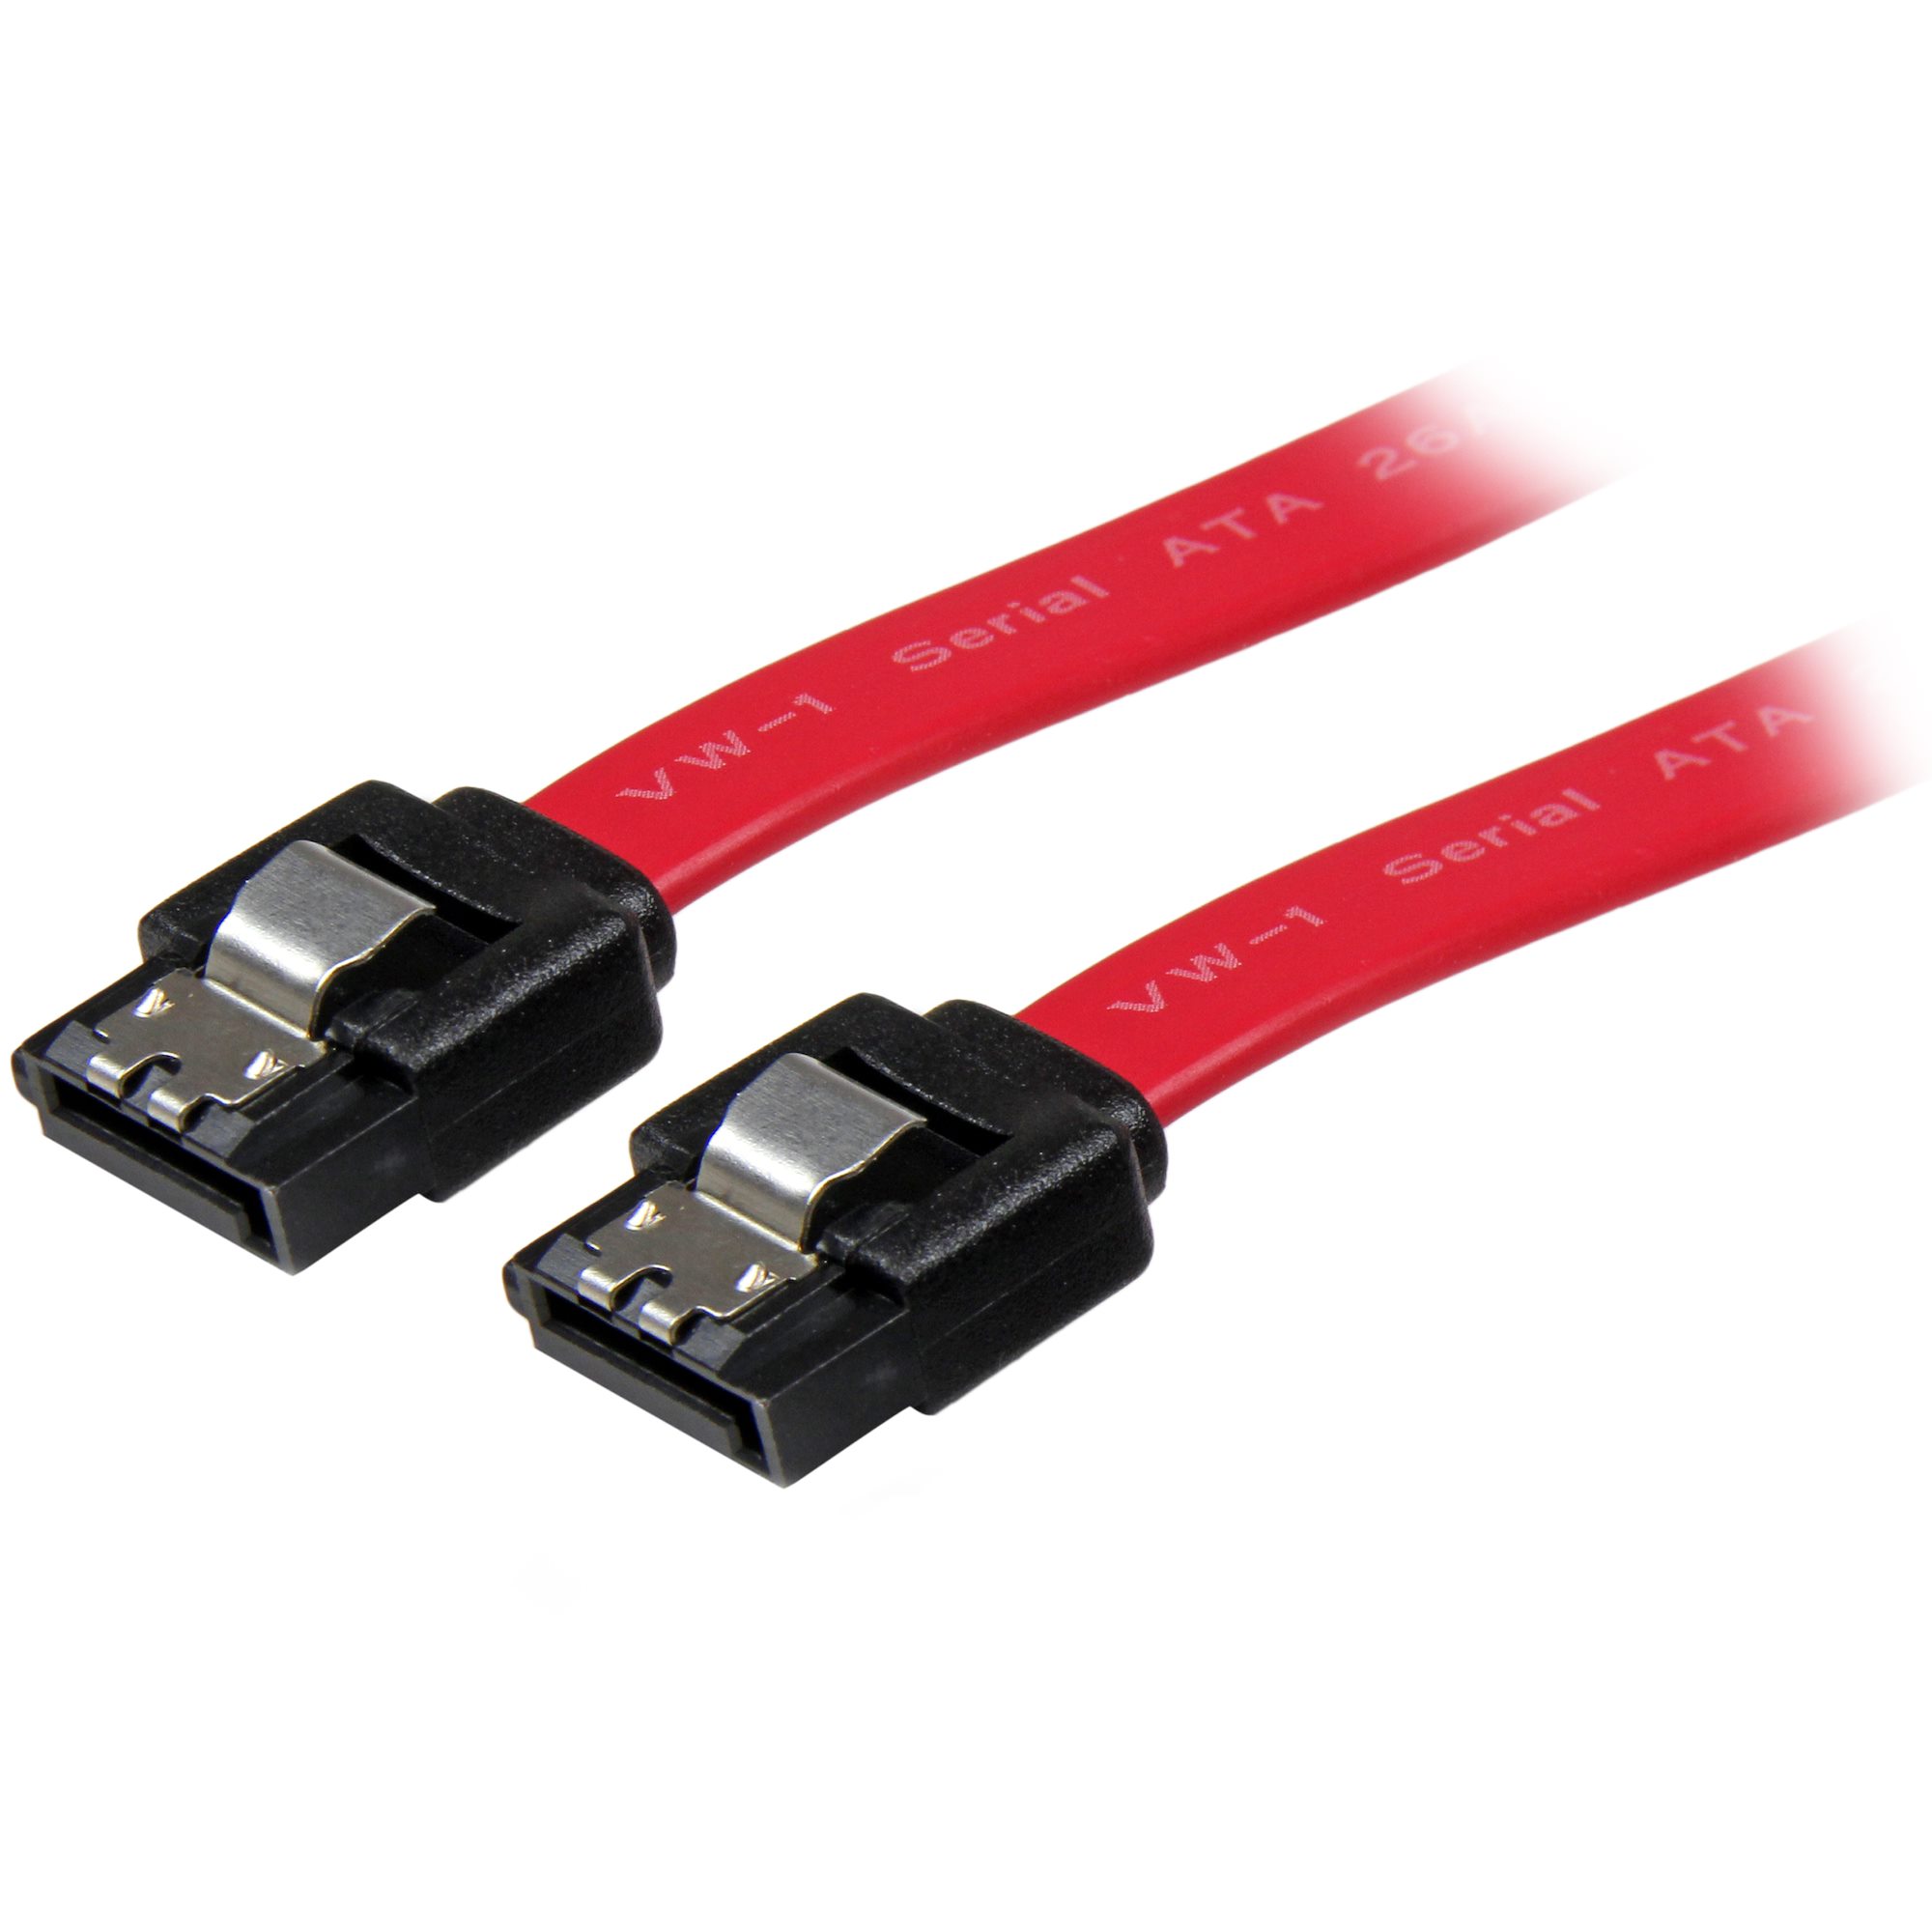 Cable 20cm SATA con Cierre de Seguridad - Cables SATA